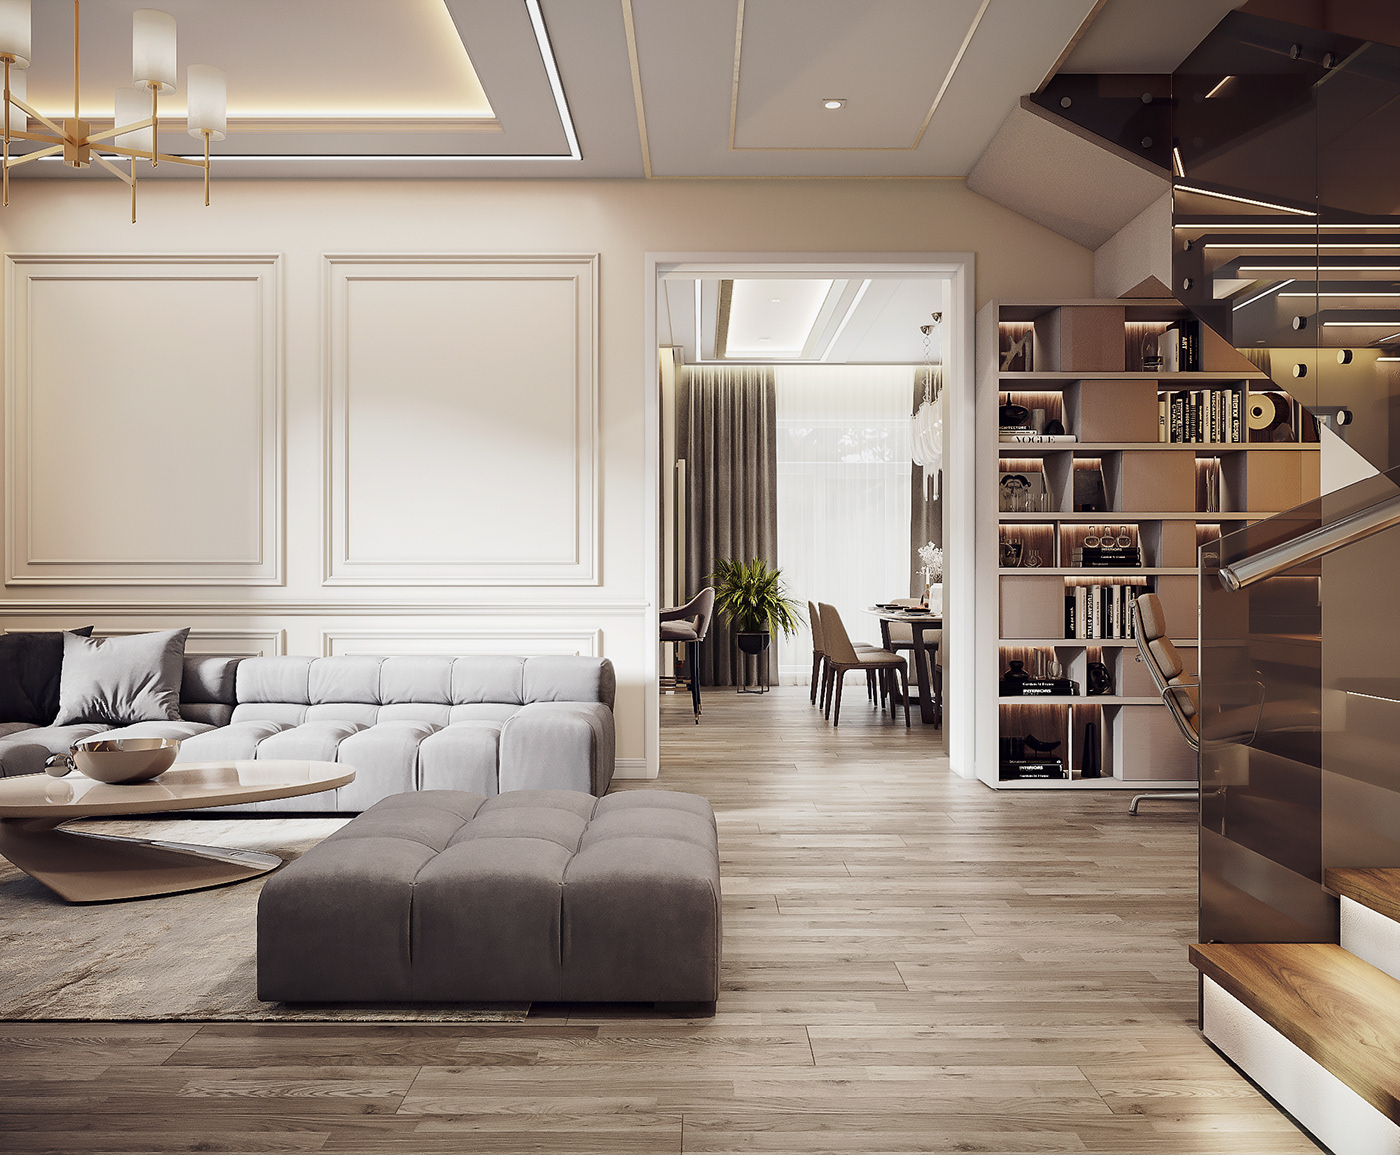 Luxury Design luxury interior luxury interior design 3ds max 3dvisualization 3d vis Moldova living room kitchen Render